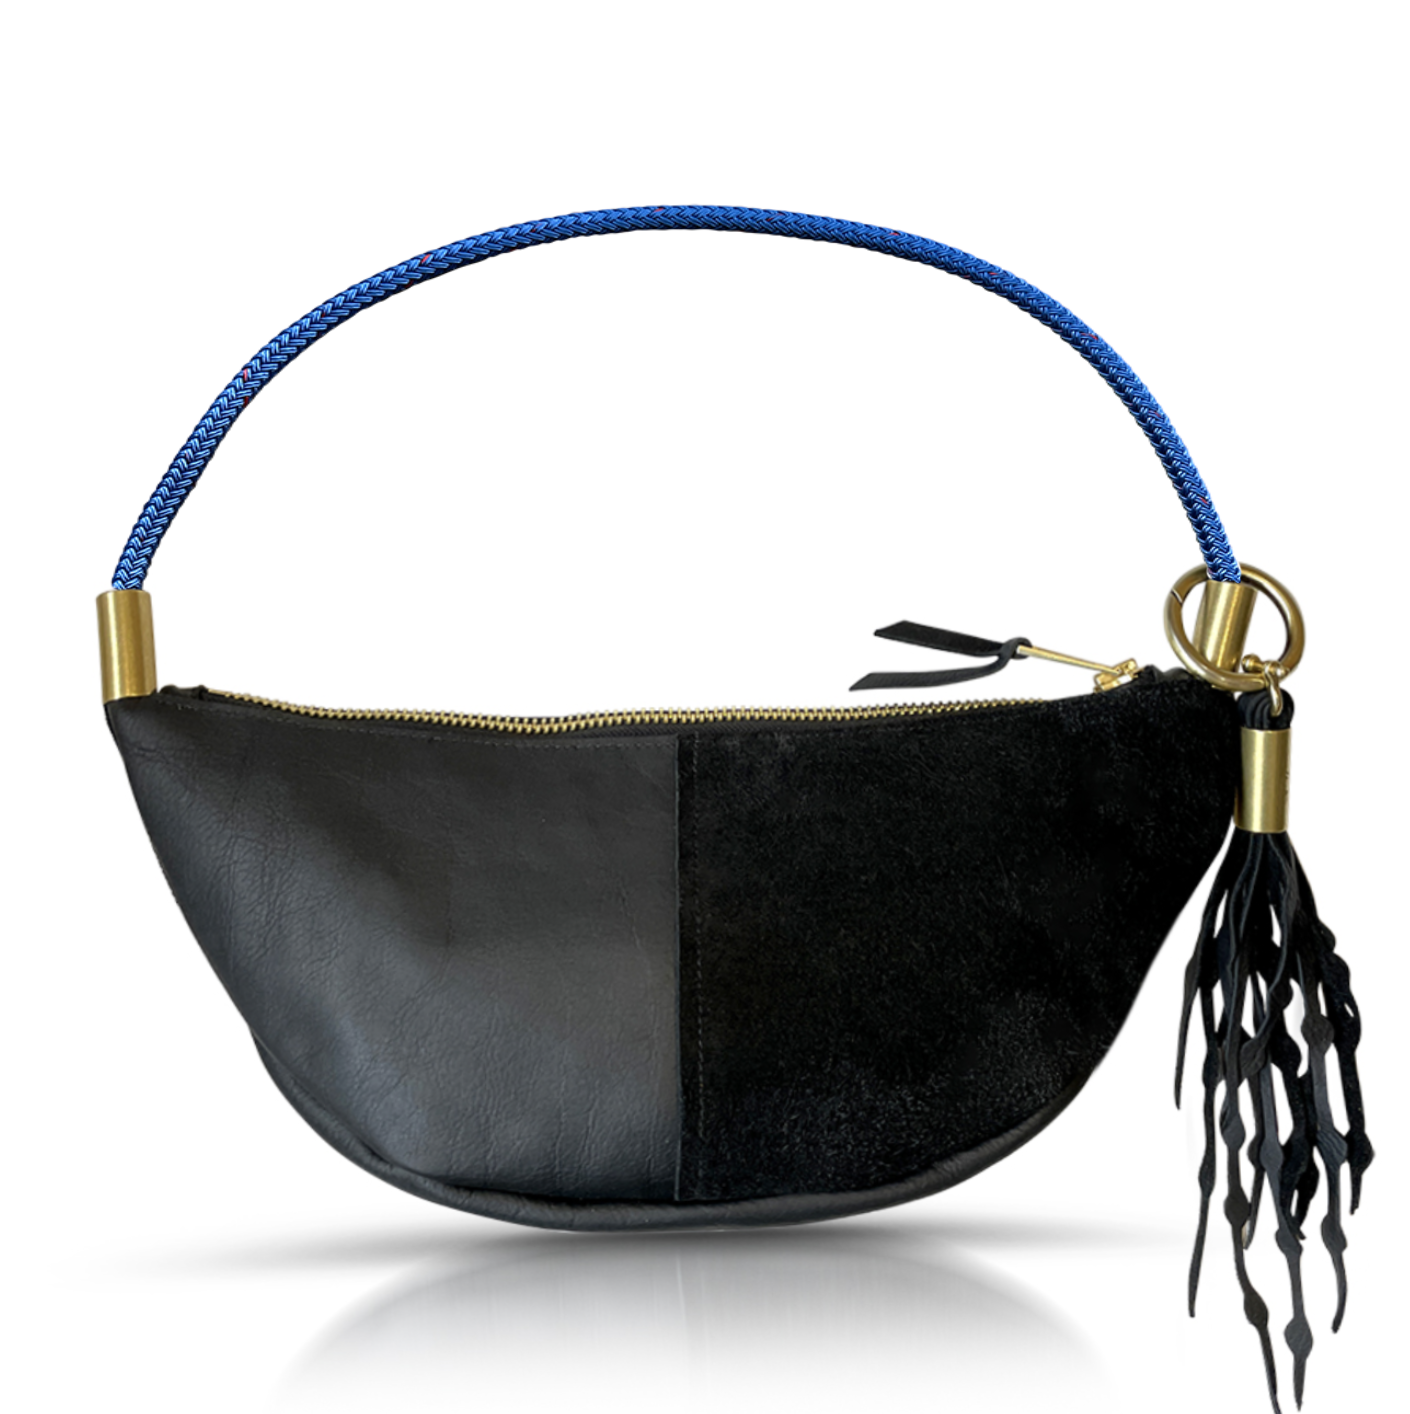 black leather sling bag with harborside blue rope